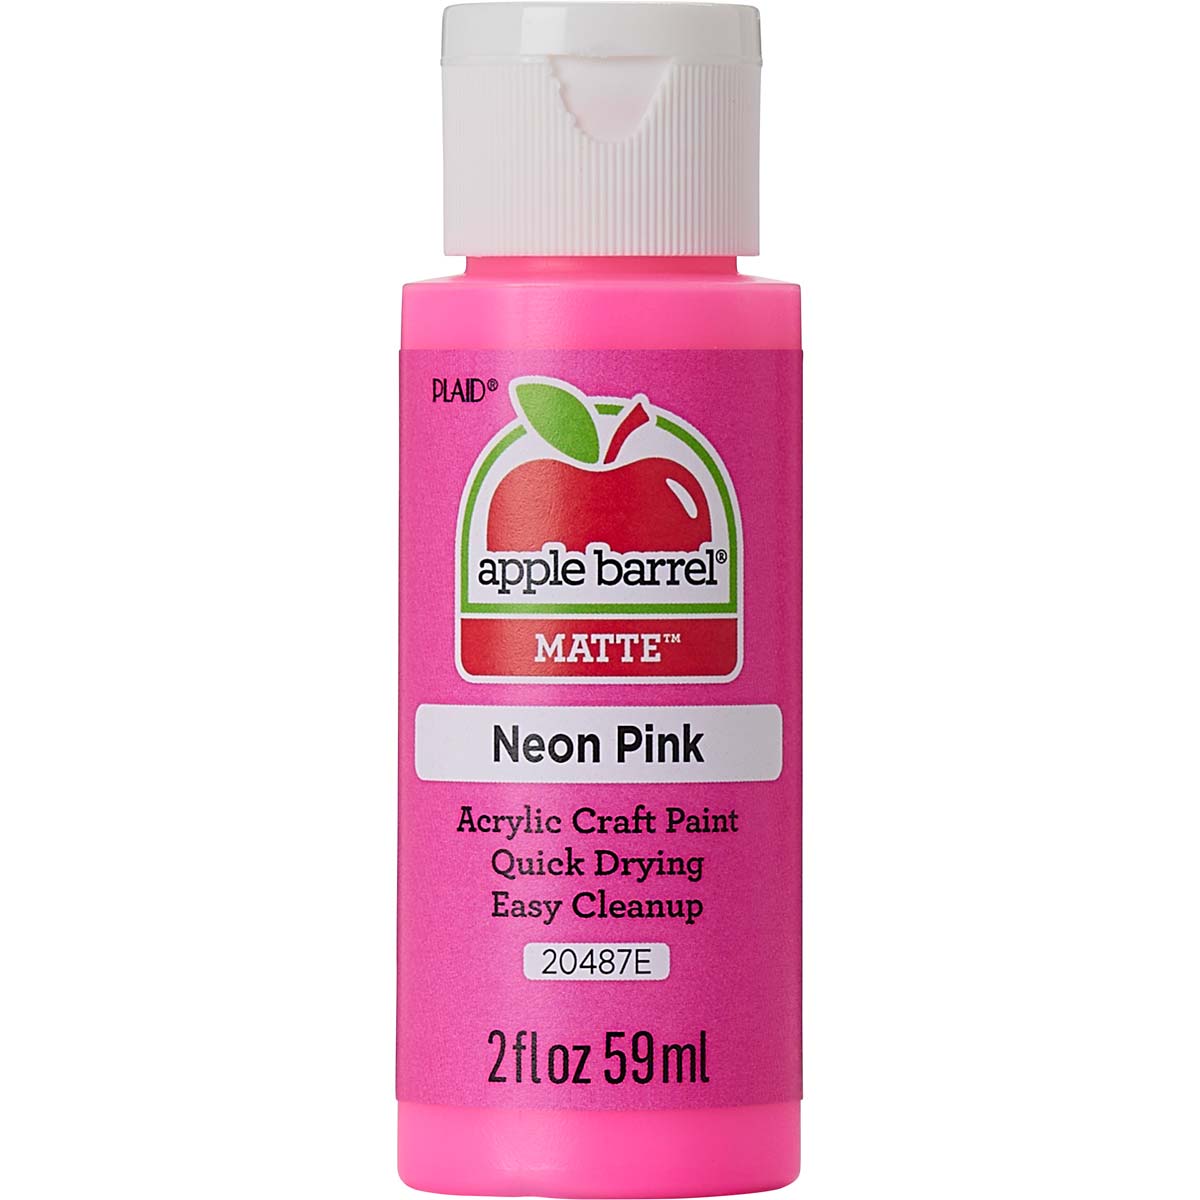 Shop Plaid Apple Barrel ® Colors - Neon Pink, 2 oz. - 20487